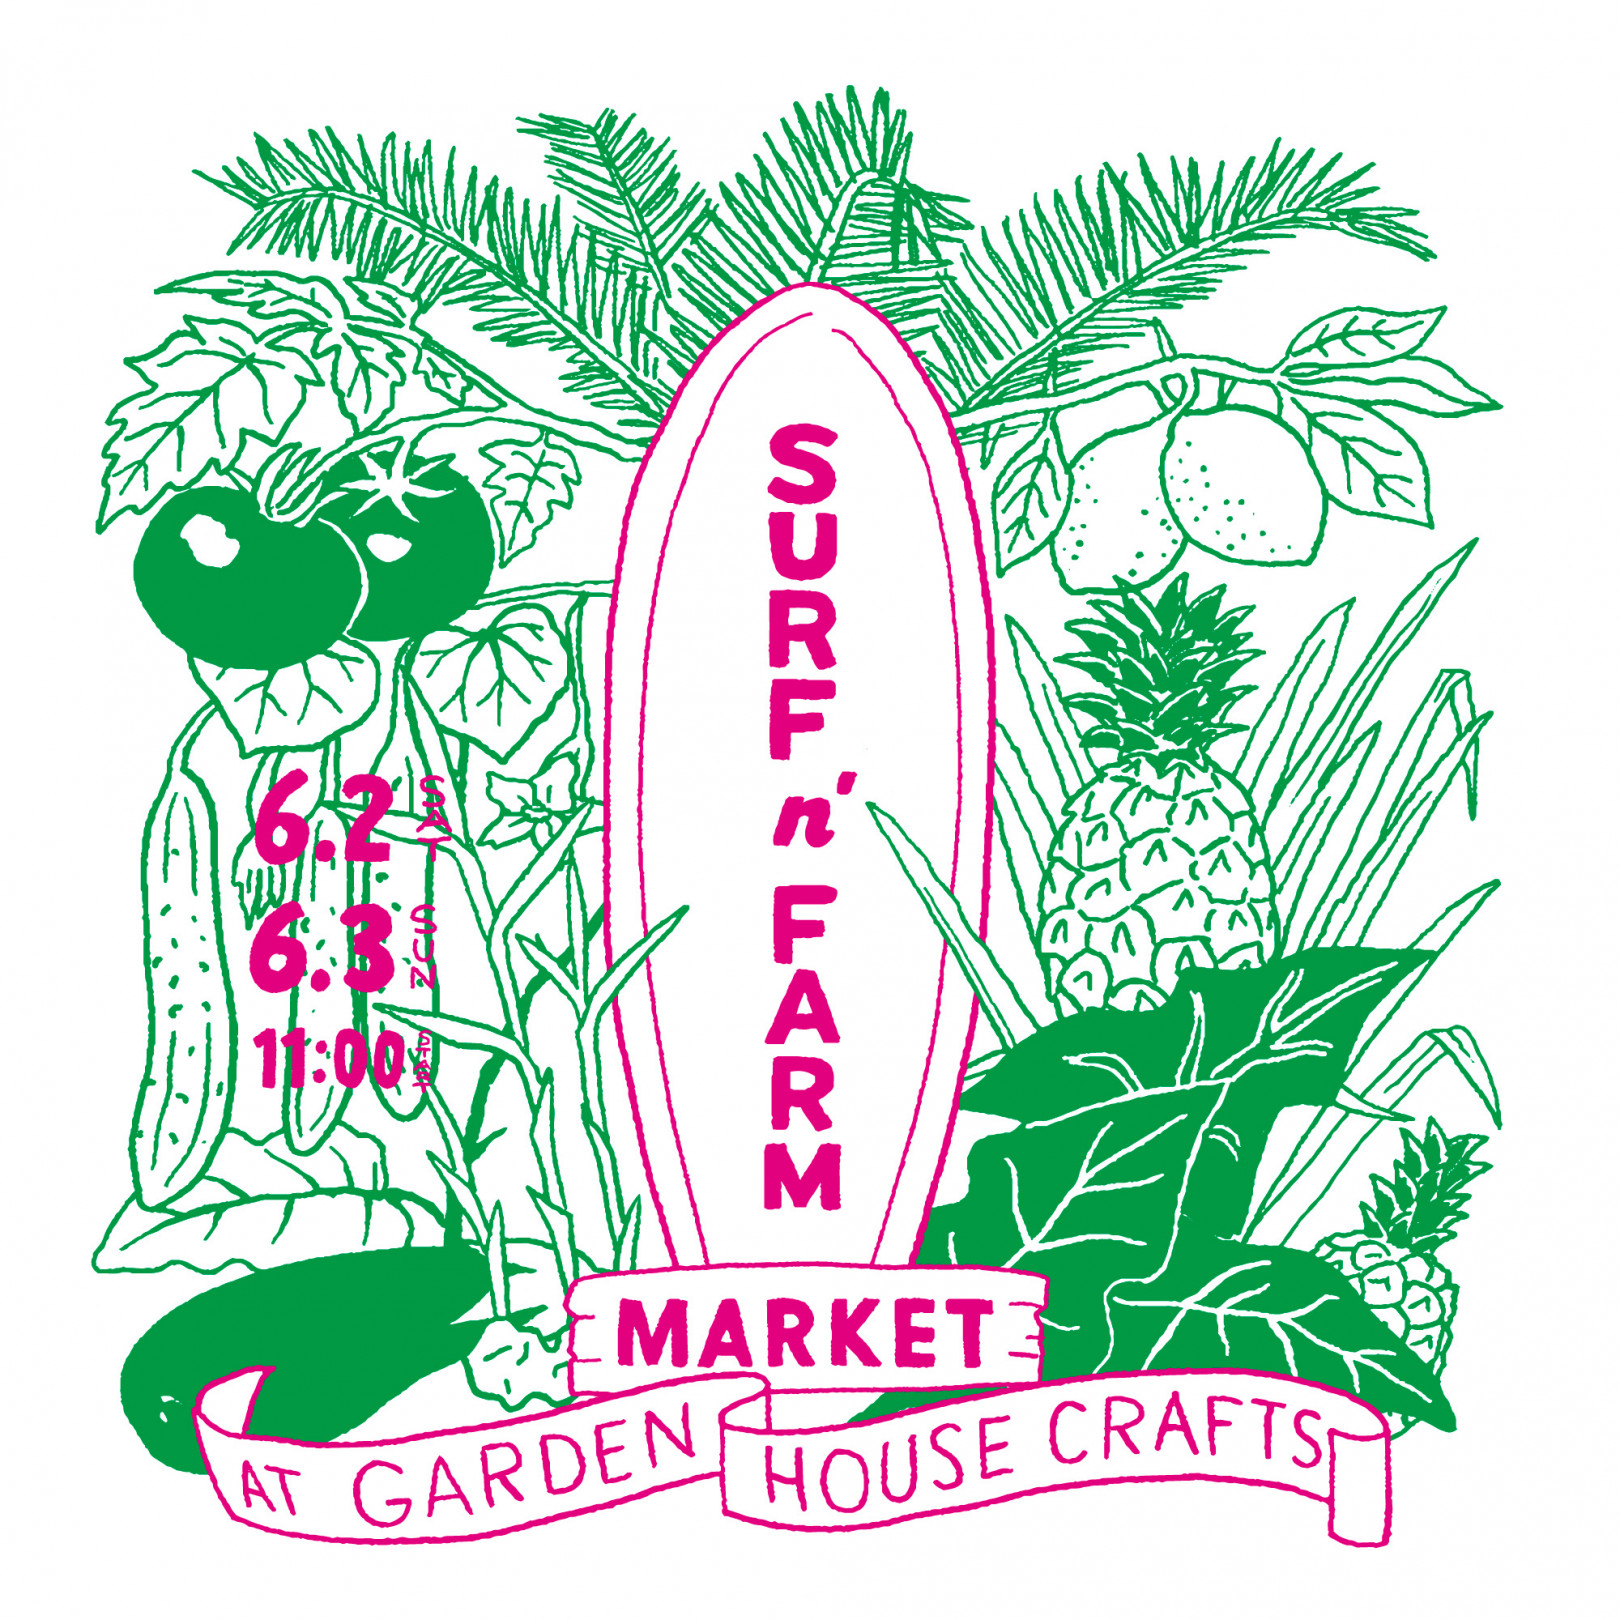 「surf ‘n farm market」がGARDEN HOUSE CRAFTSにて開催